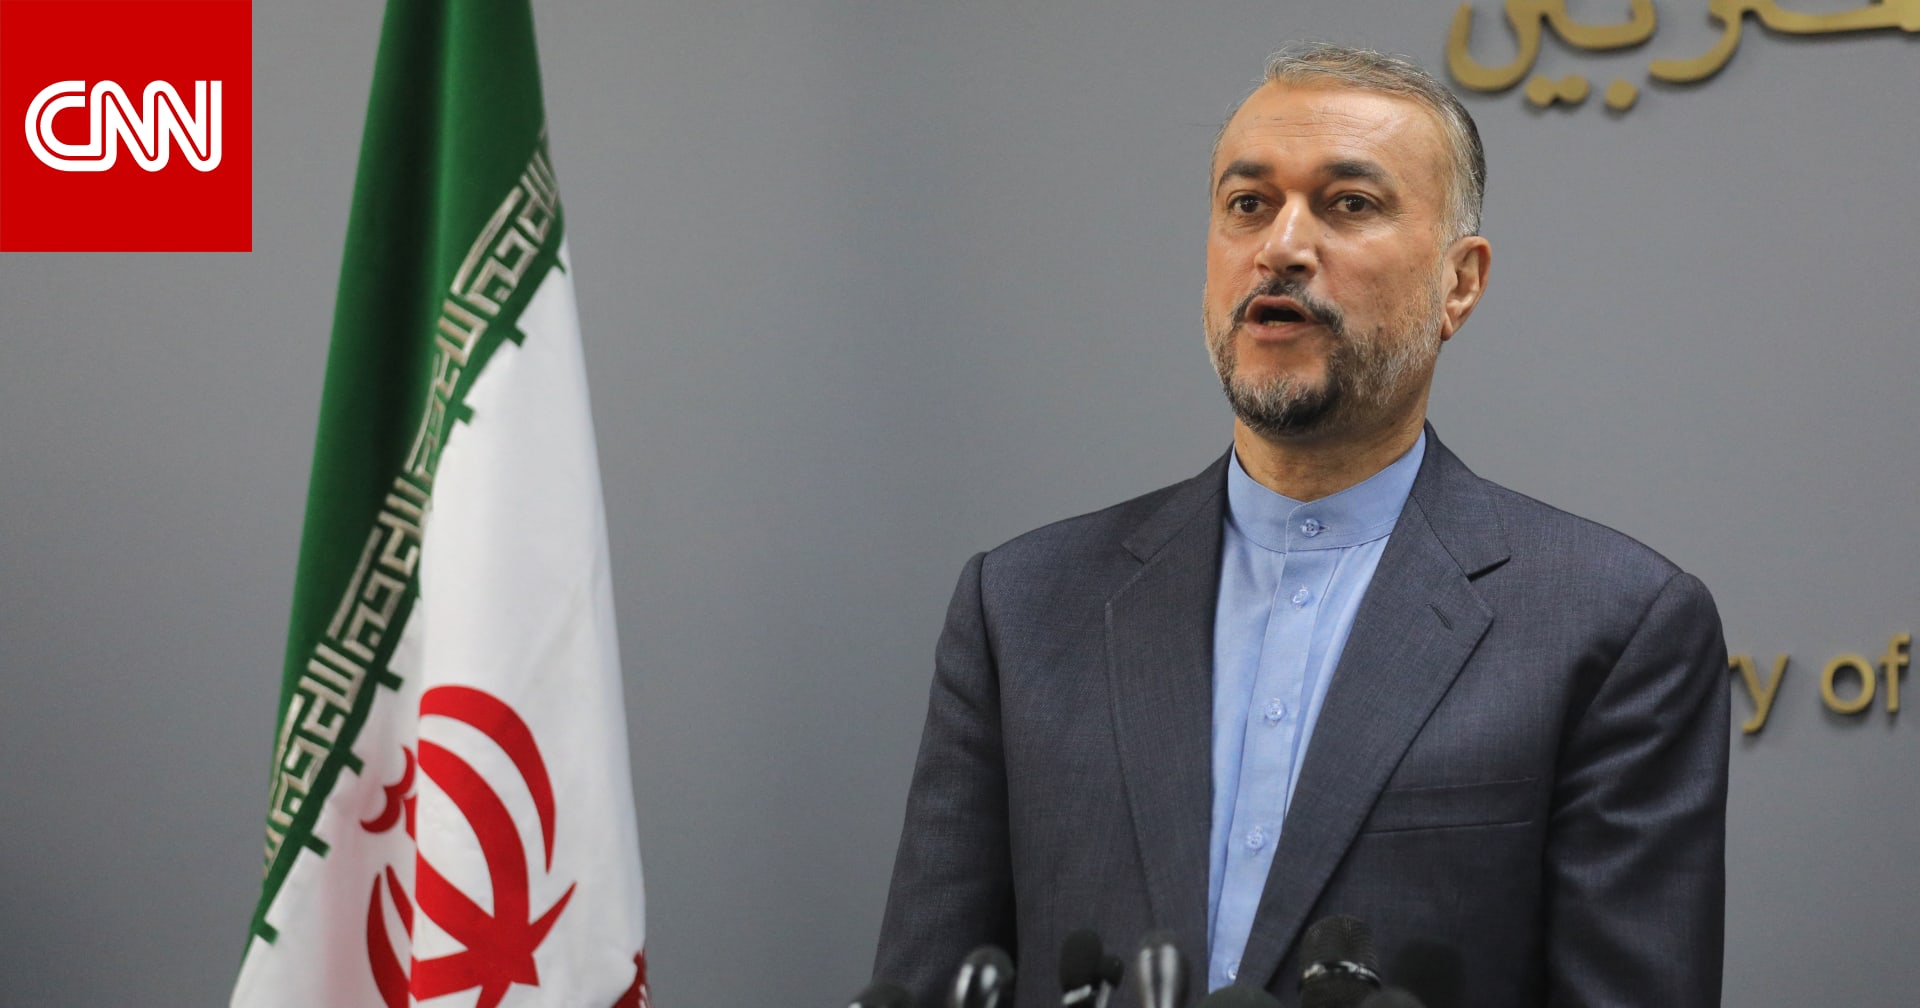 وزير خارجية إيران مُحذرًا إسرائيل: امتداد الحرب لجبهات أخرى قد يصبح "لا مفر منه" قريبًا